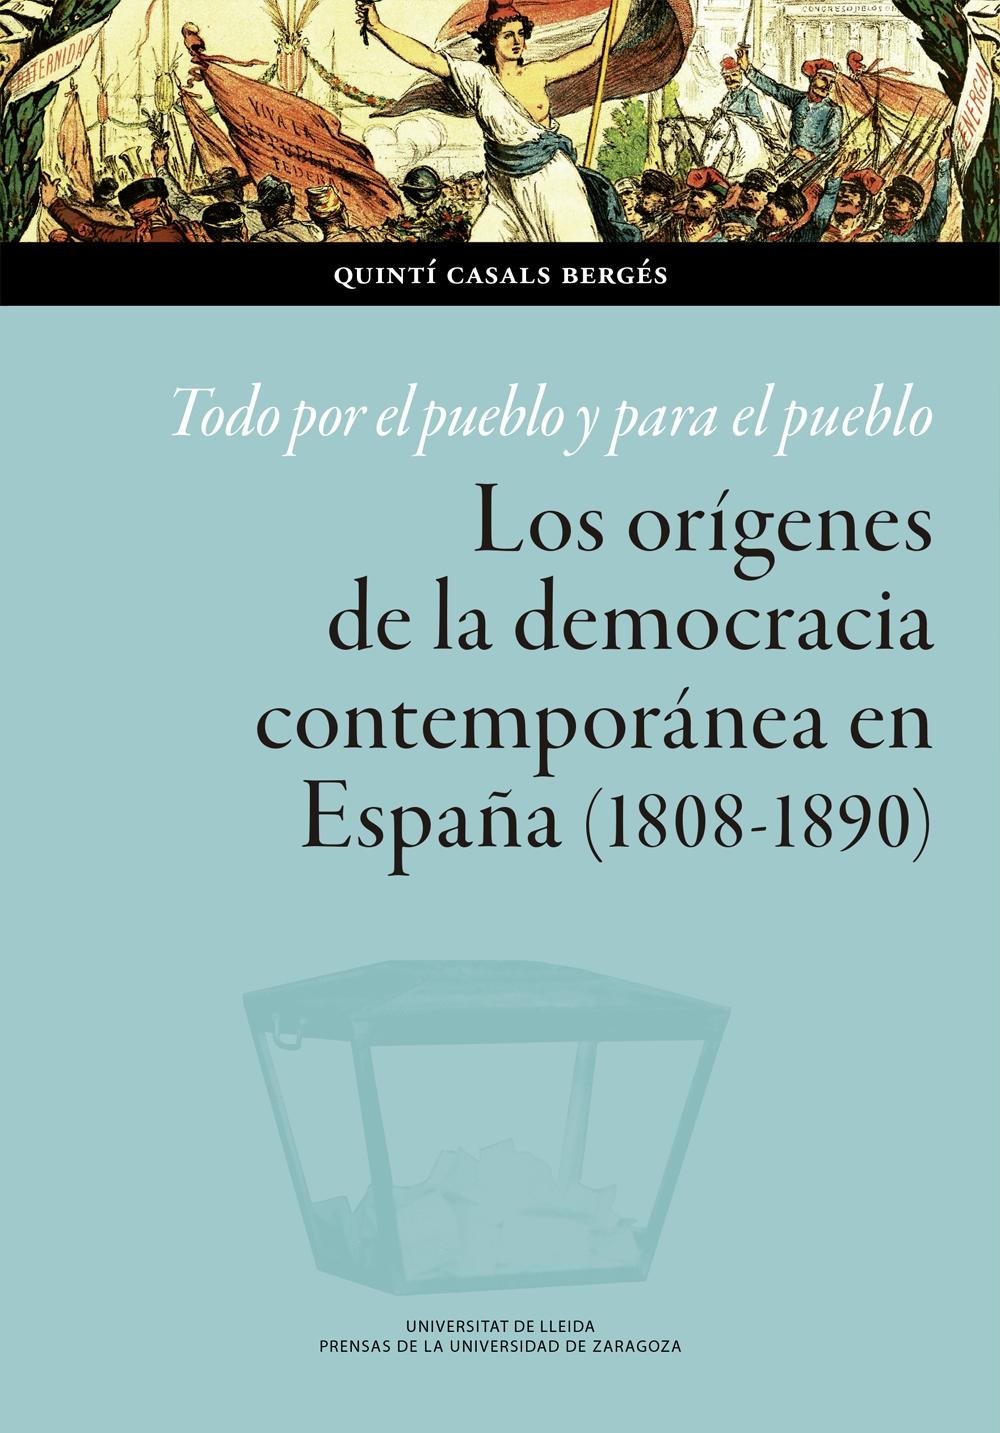 Todo por el pueblo y para el pueblo "Los orígenes de la democracia contemporánea en España (1808-1890)"